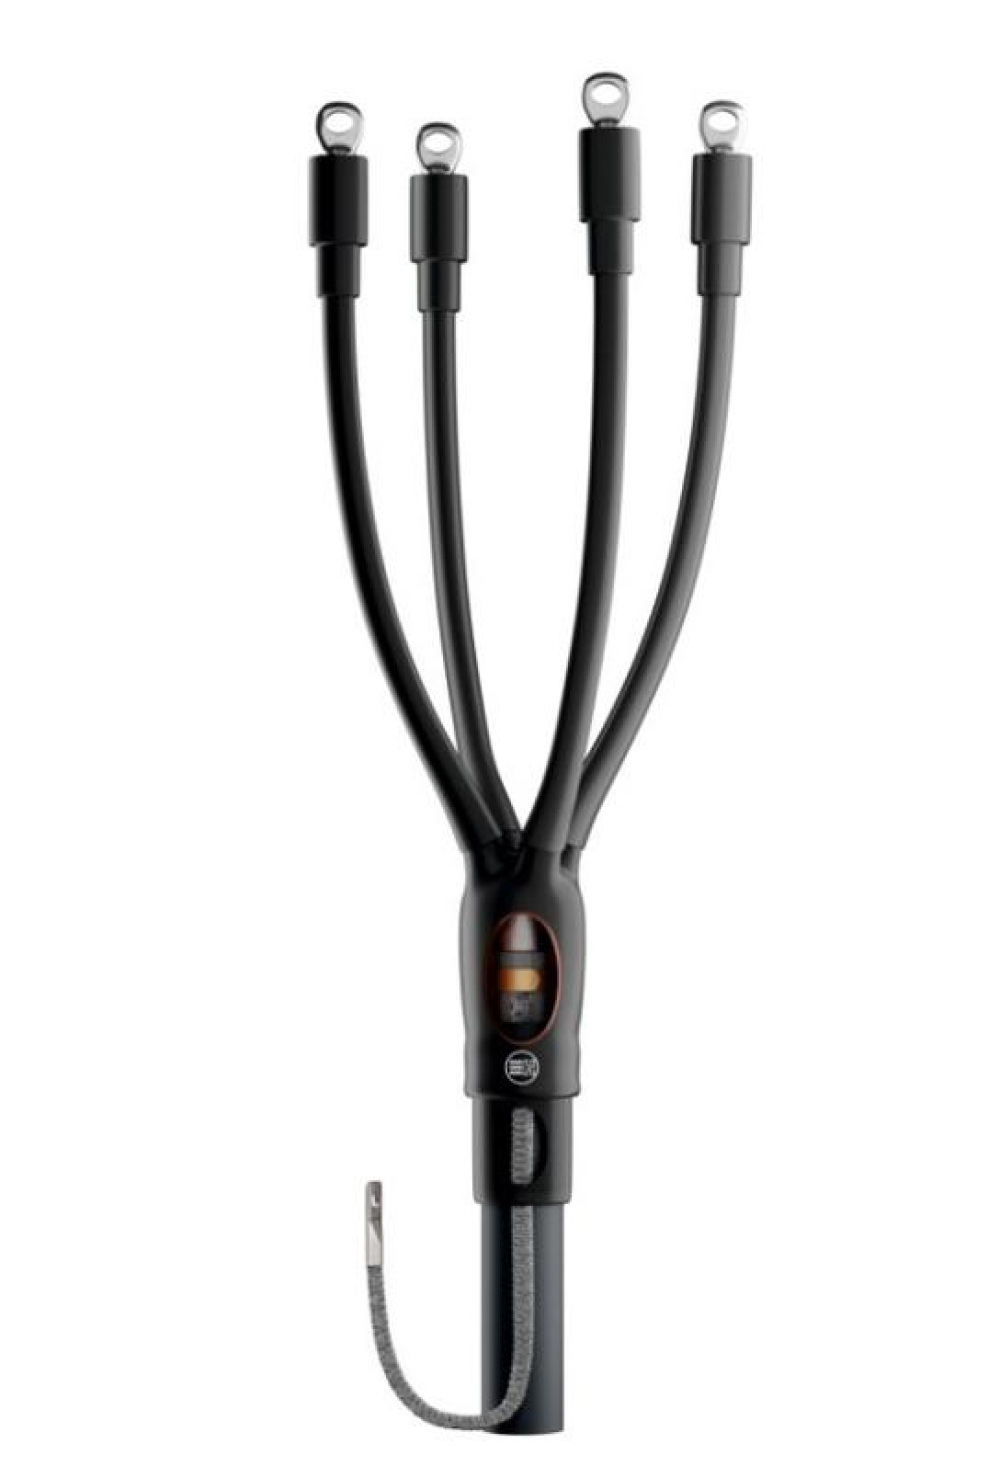 Муфта кабельная НИЛЕД HT2-01 4х25-50 мм2 концевая, количество жил - 4, сечение жил 25-50 мм2, напряжение 1кВ, с болтовыми наконечниками без брони для кабелей с пластмассовой изоляцией